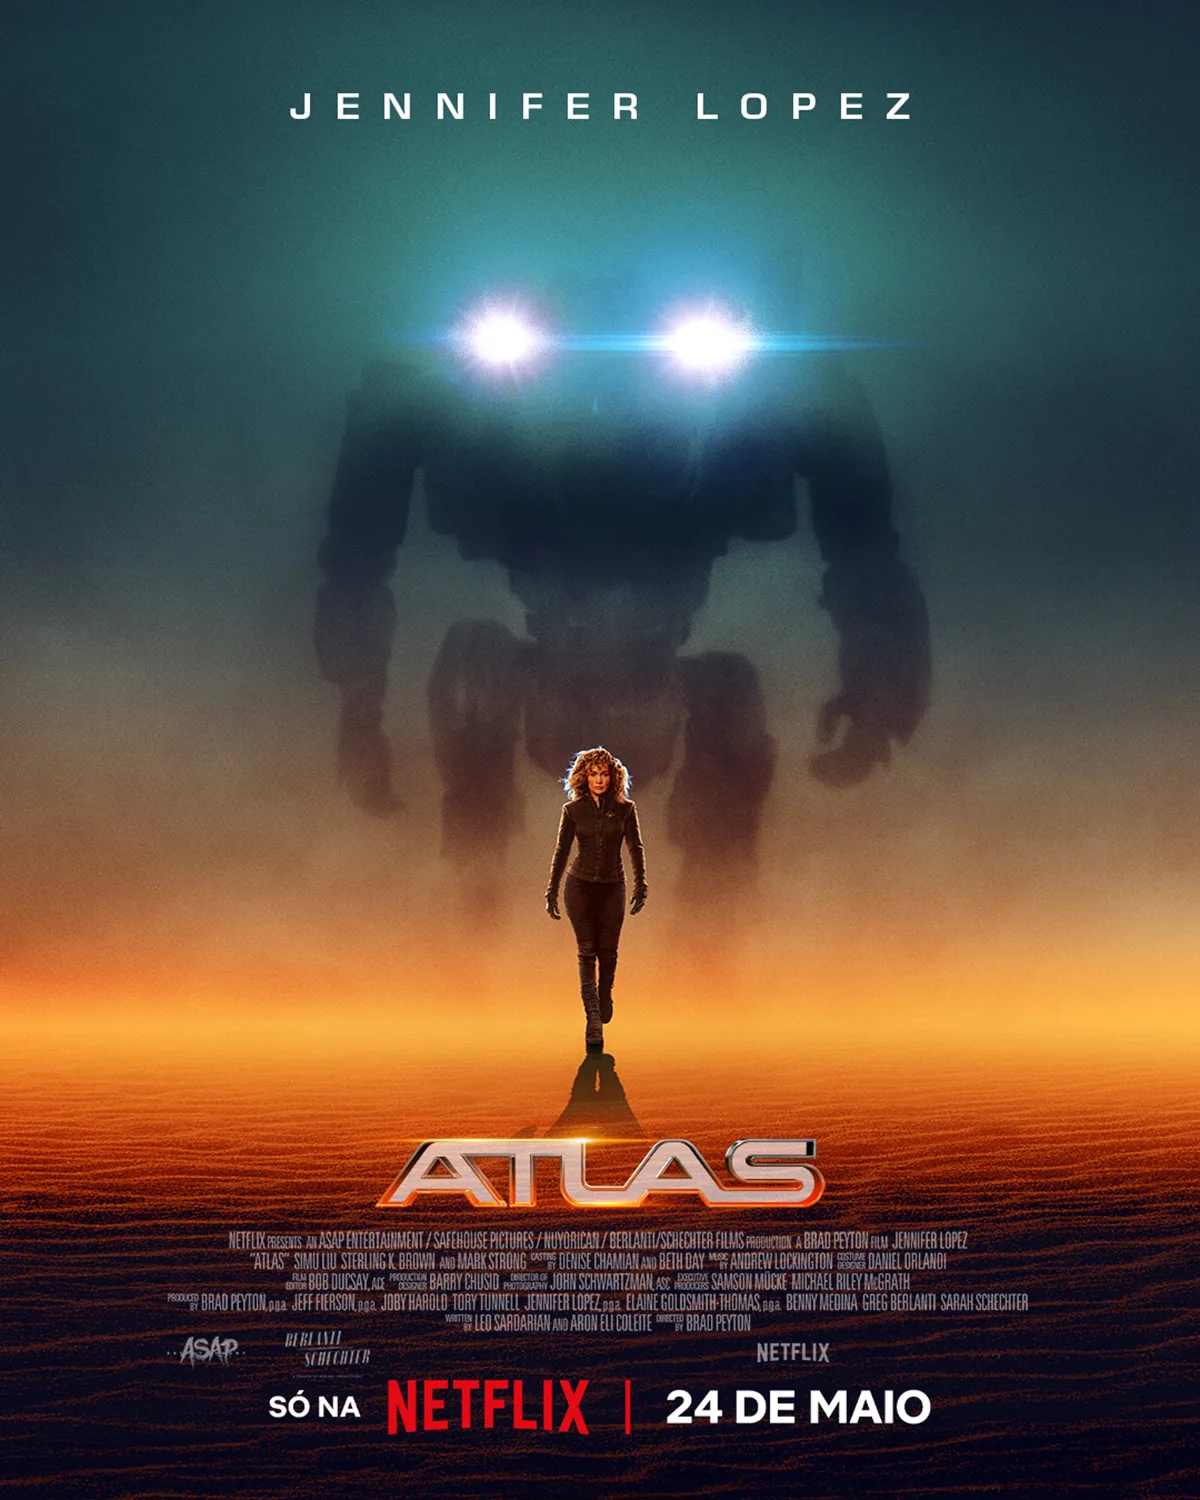           Atlas: Netflix divulga cartaz do novo filme estrelado por Jennifer Lopez          